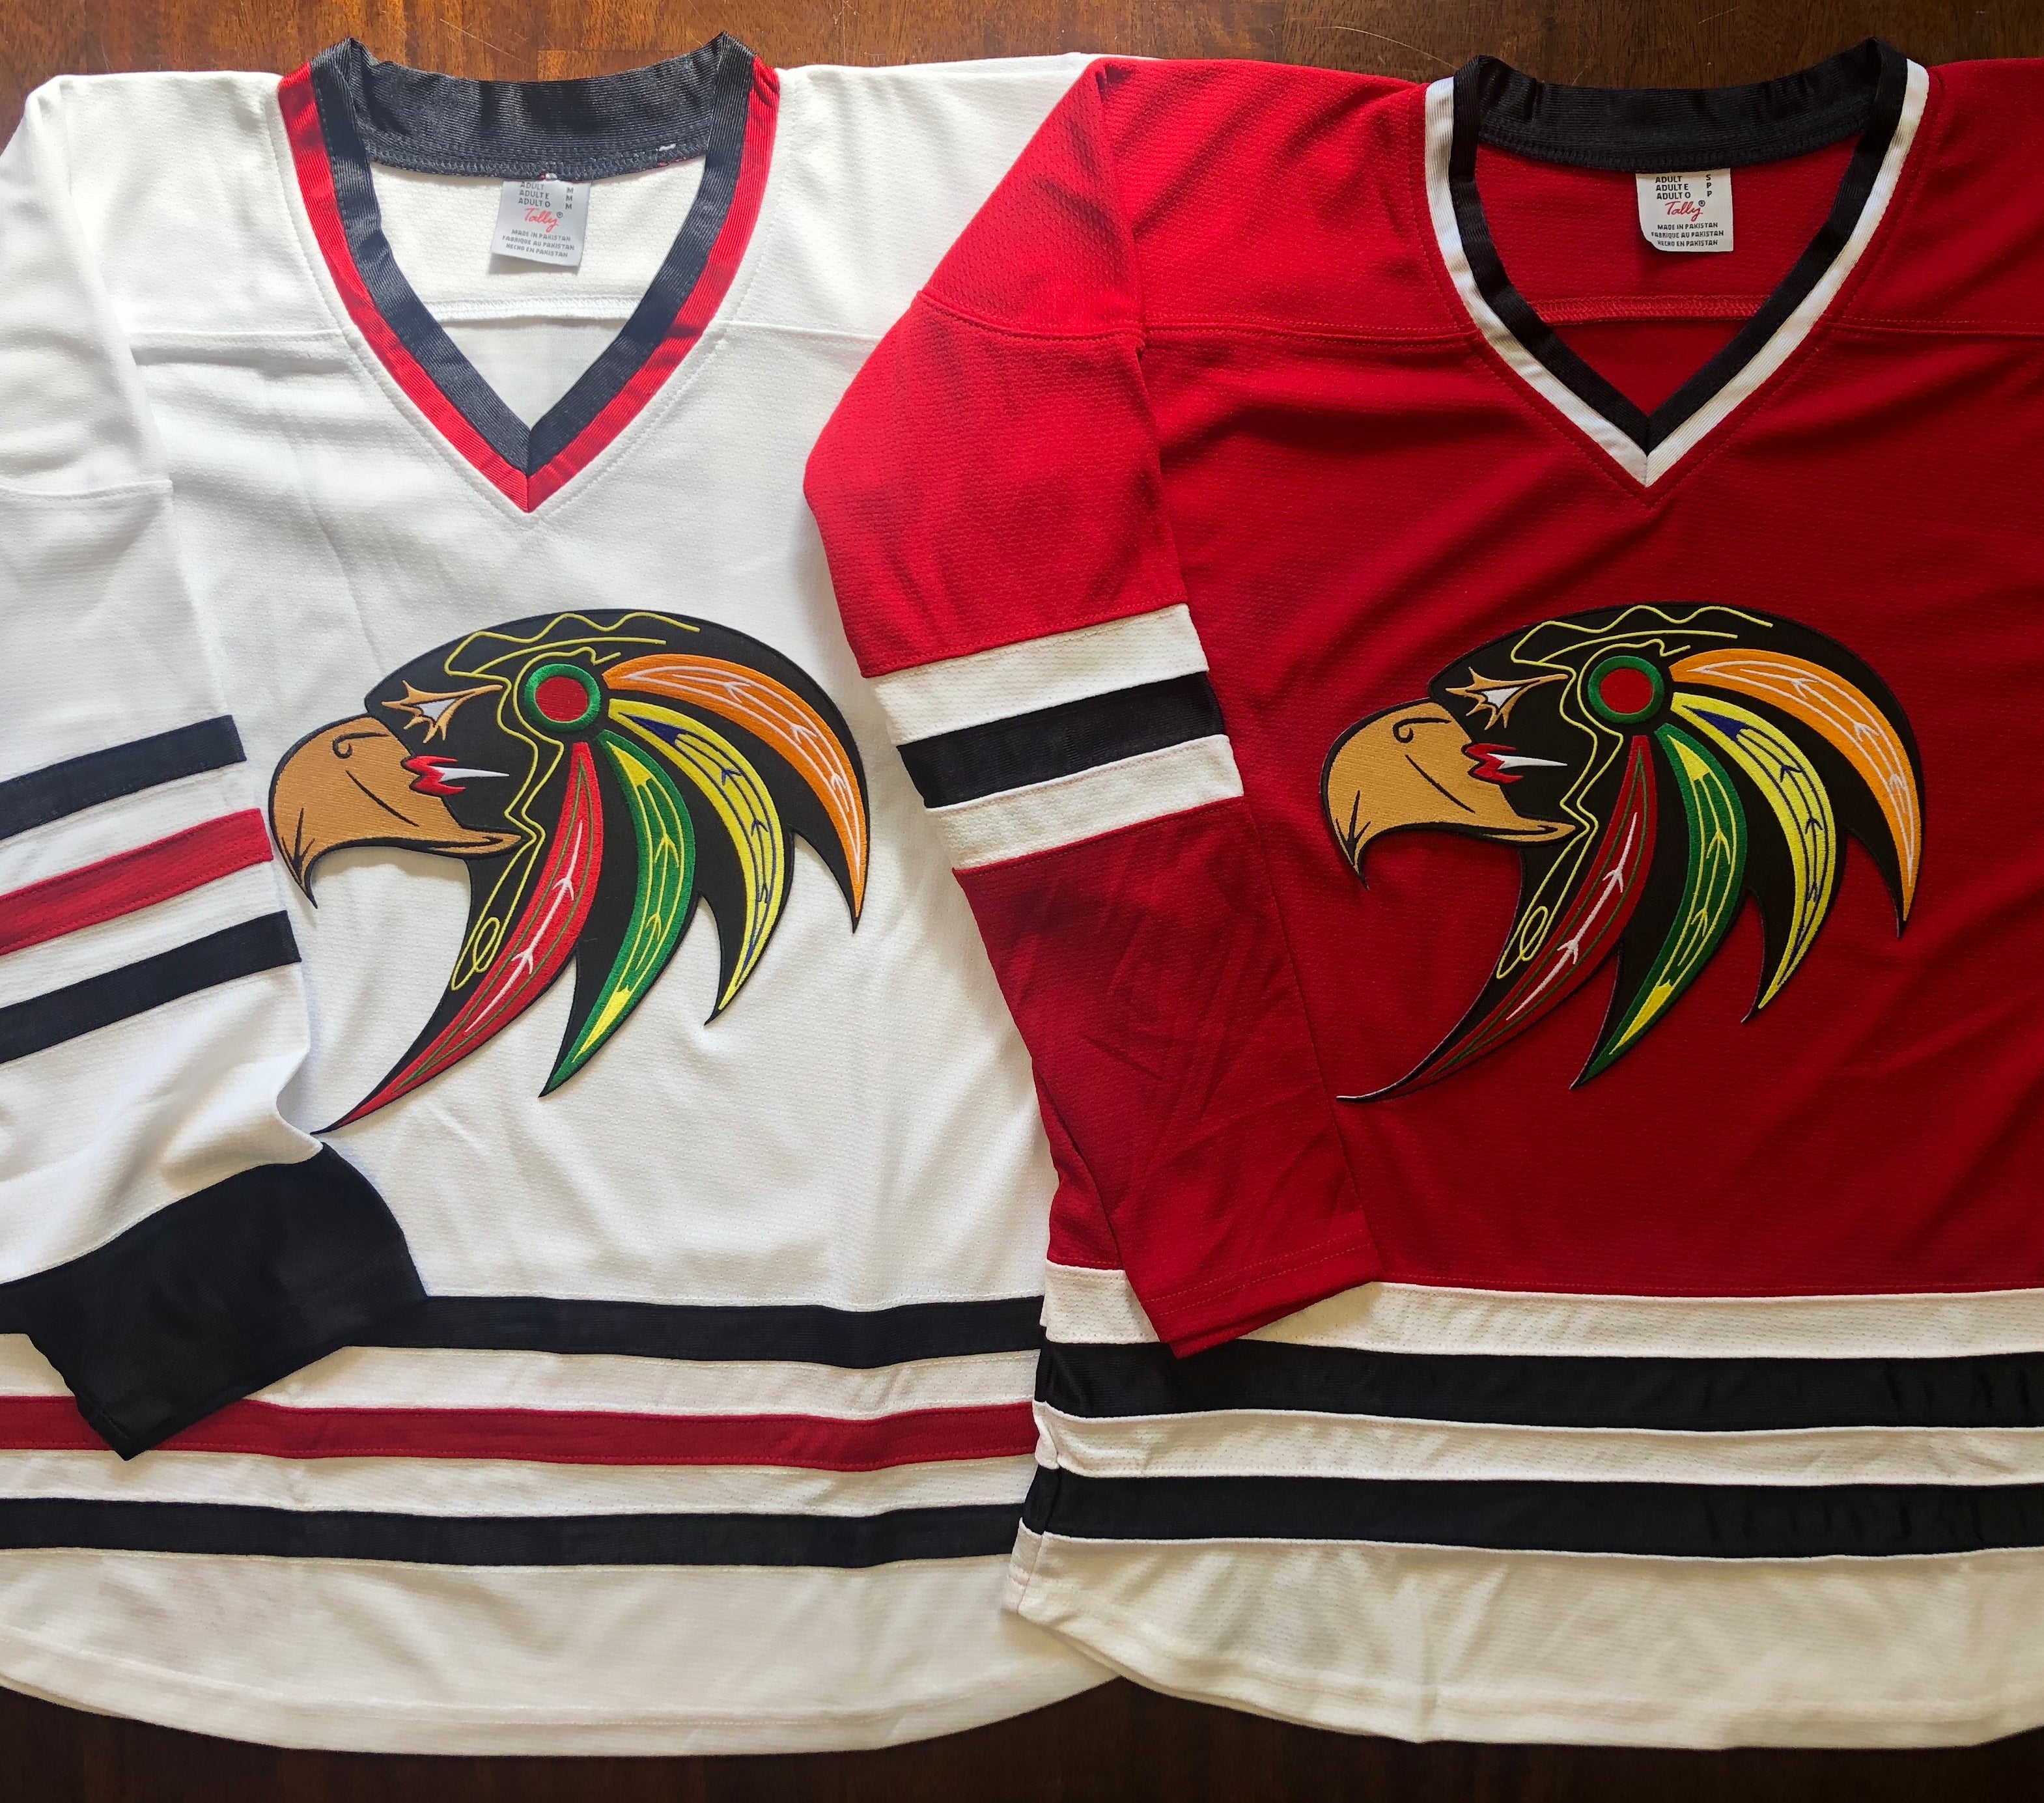 Custom Hockey Jerseys with the Johnny Canuck Twill Logo – Tally